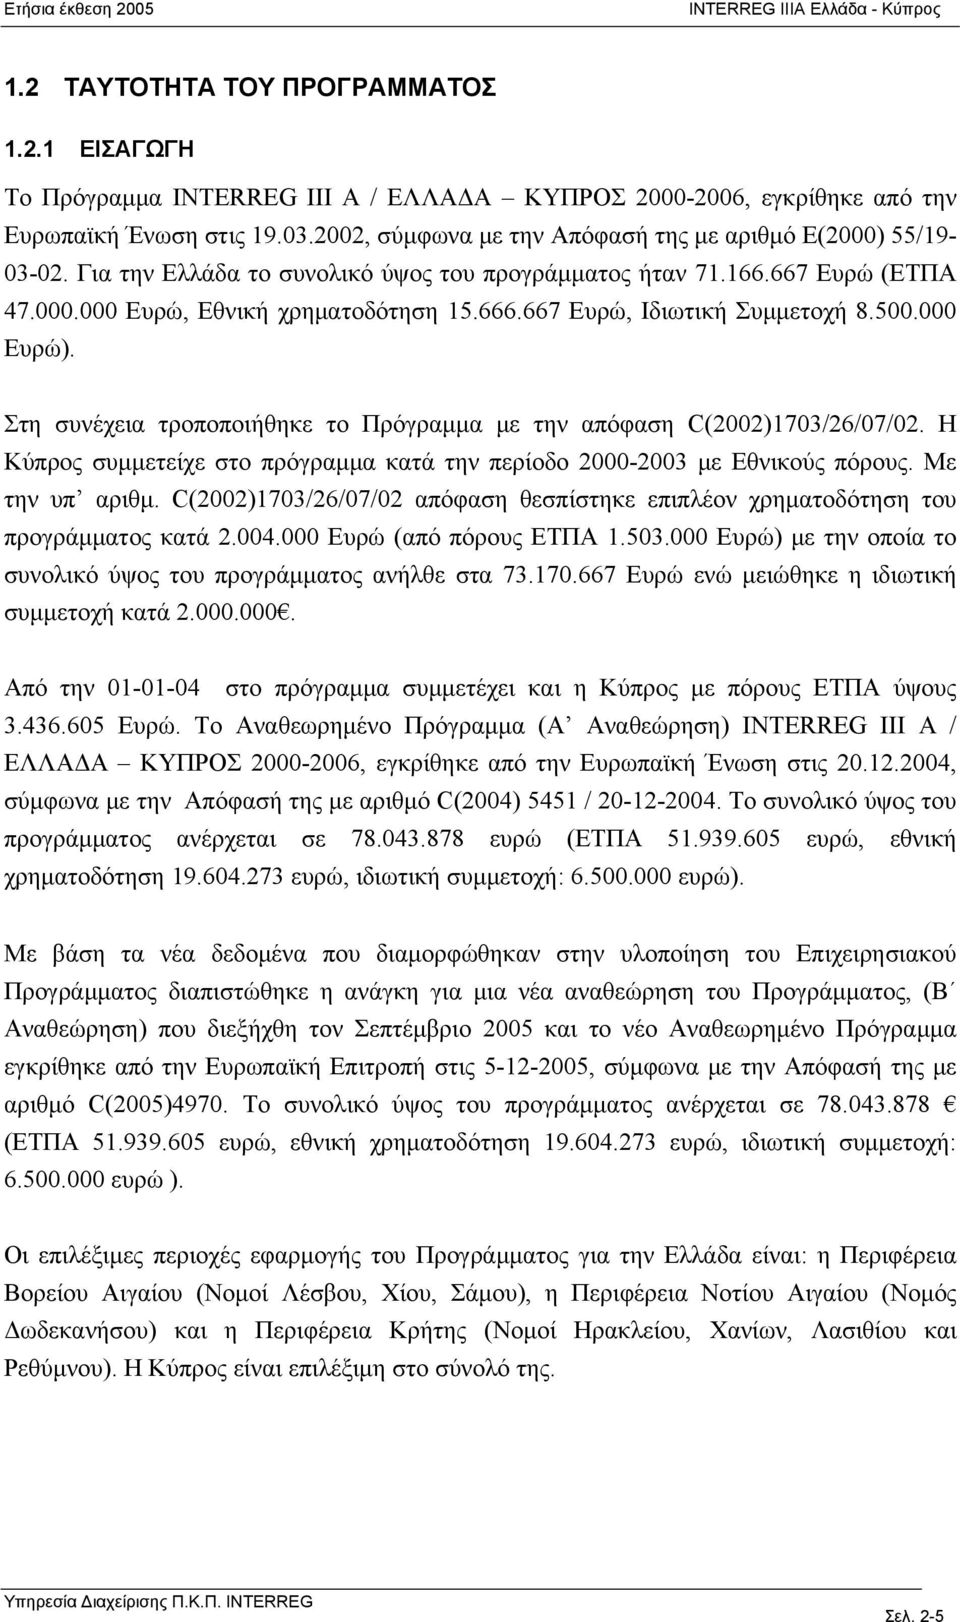 667 Ευρώ, Ιδιωτική Συμμετοχή 8.500.000 Ευρώ). Στη συνέχεια τροποποιήθηκε το Πρόγραμμα με την απόφαση C(2002)1703/26/07/02.